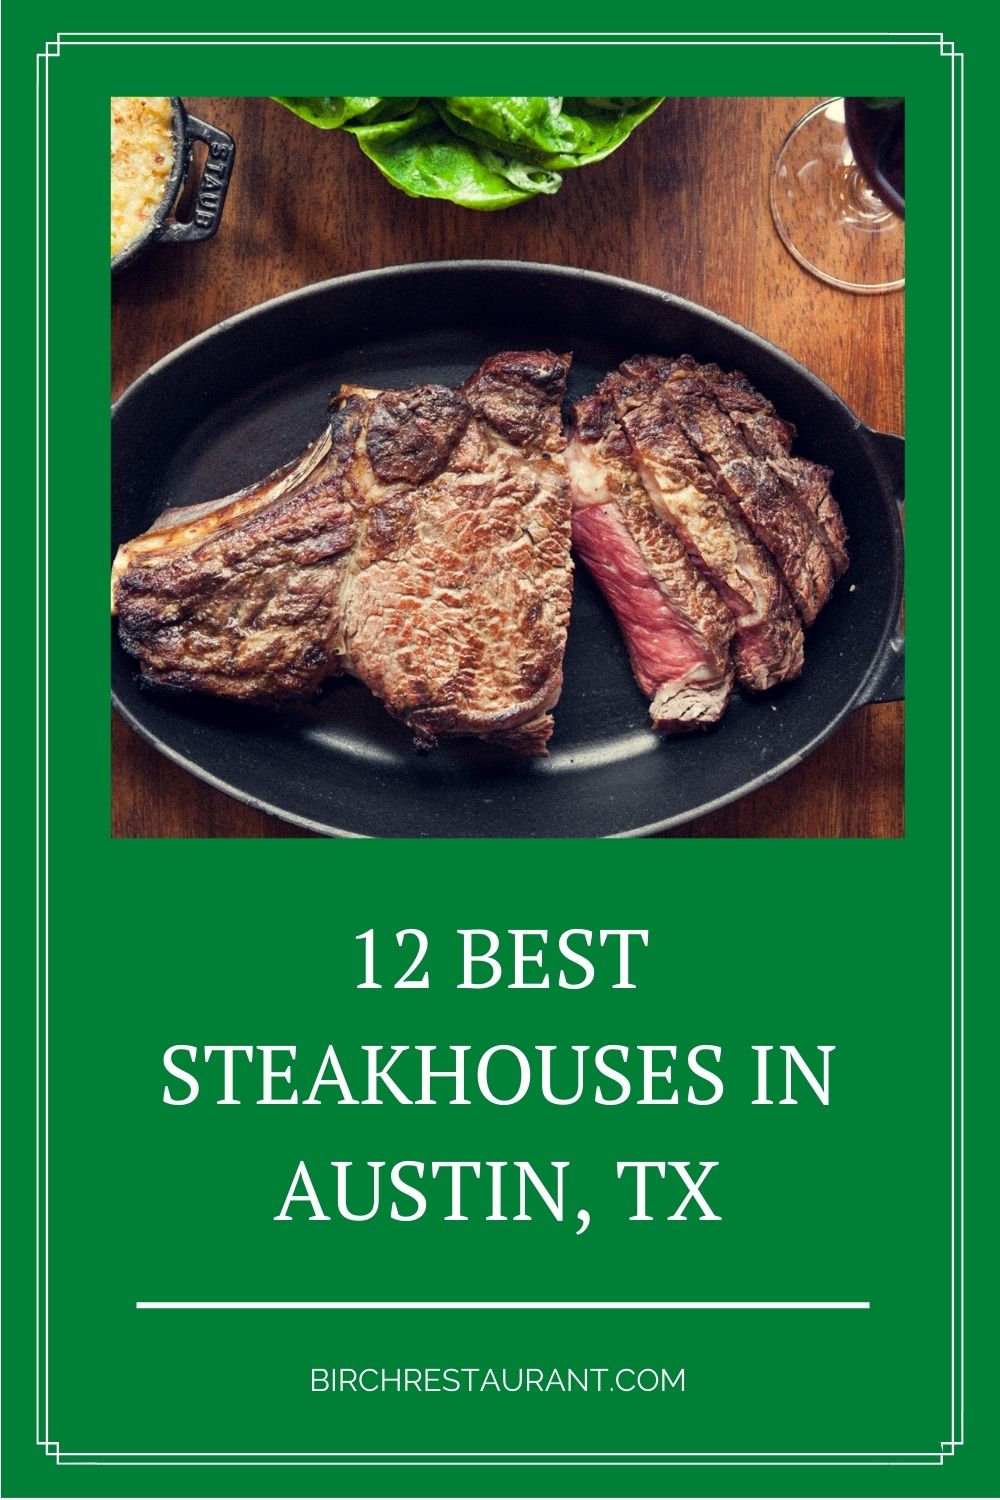 Best Steakhouses in Austin